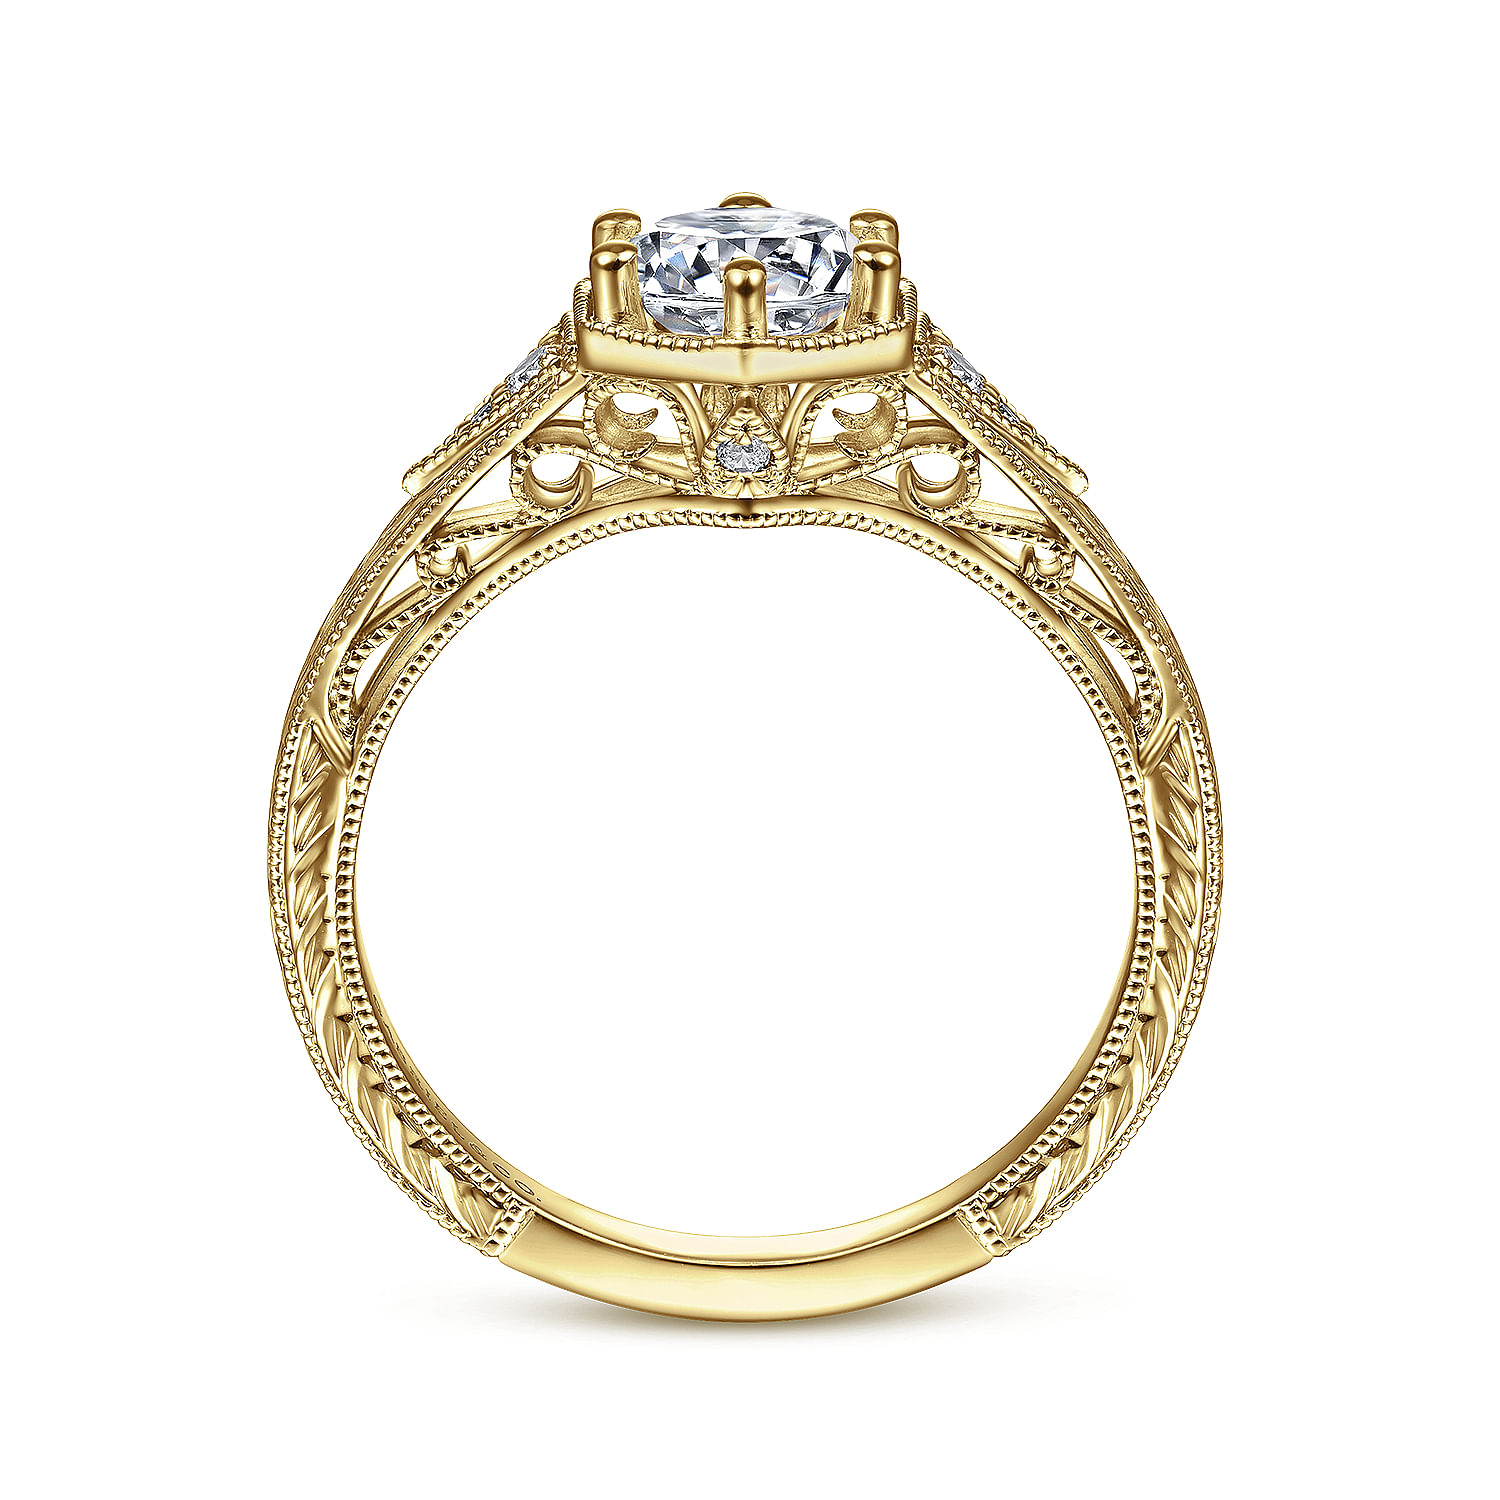 Priya - Vintage Inspired 14K Yellow Gold Round Diamond Engagement Ring - 0.06 ct - Shot 2